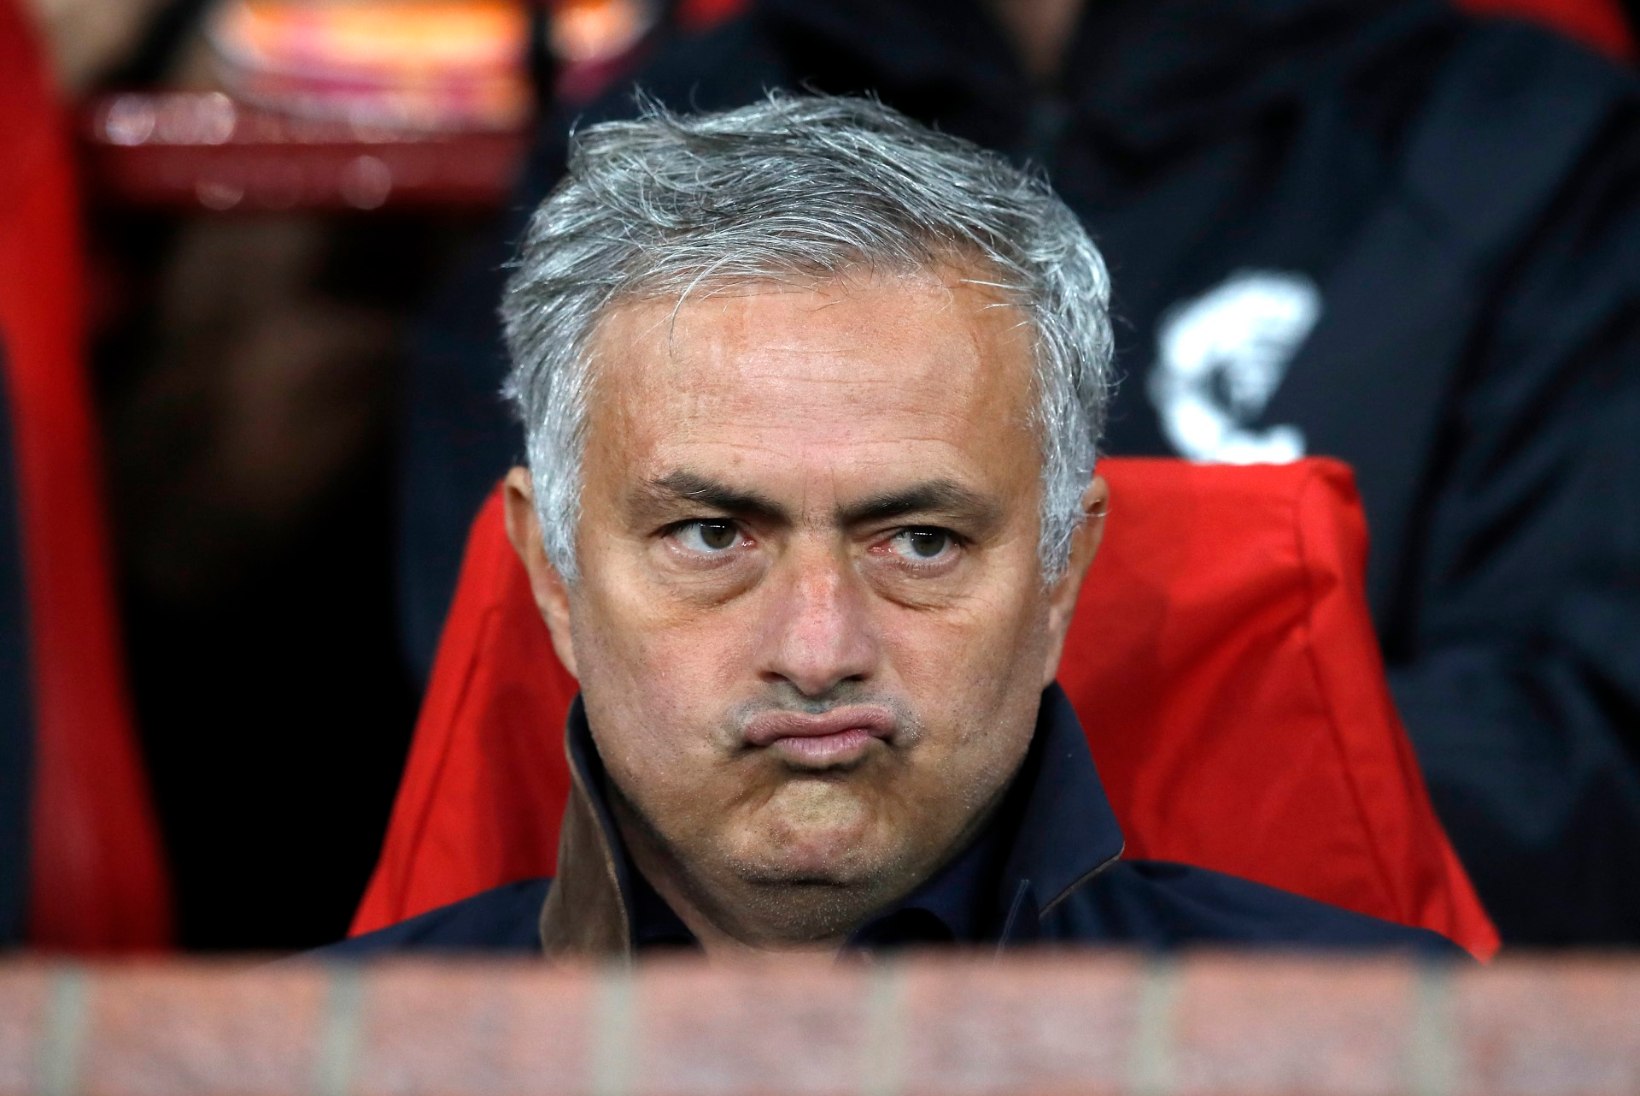 Briti meedia sõnul saab Mourinho täna hundipassi, Unitedi legend on püha viha täis